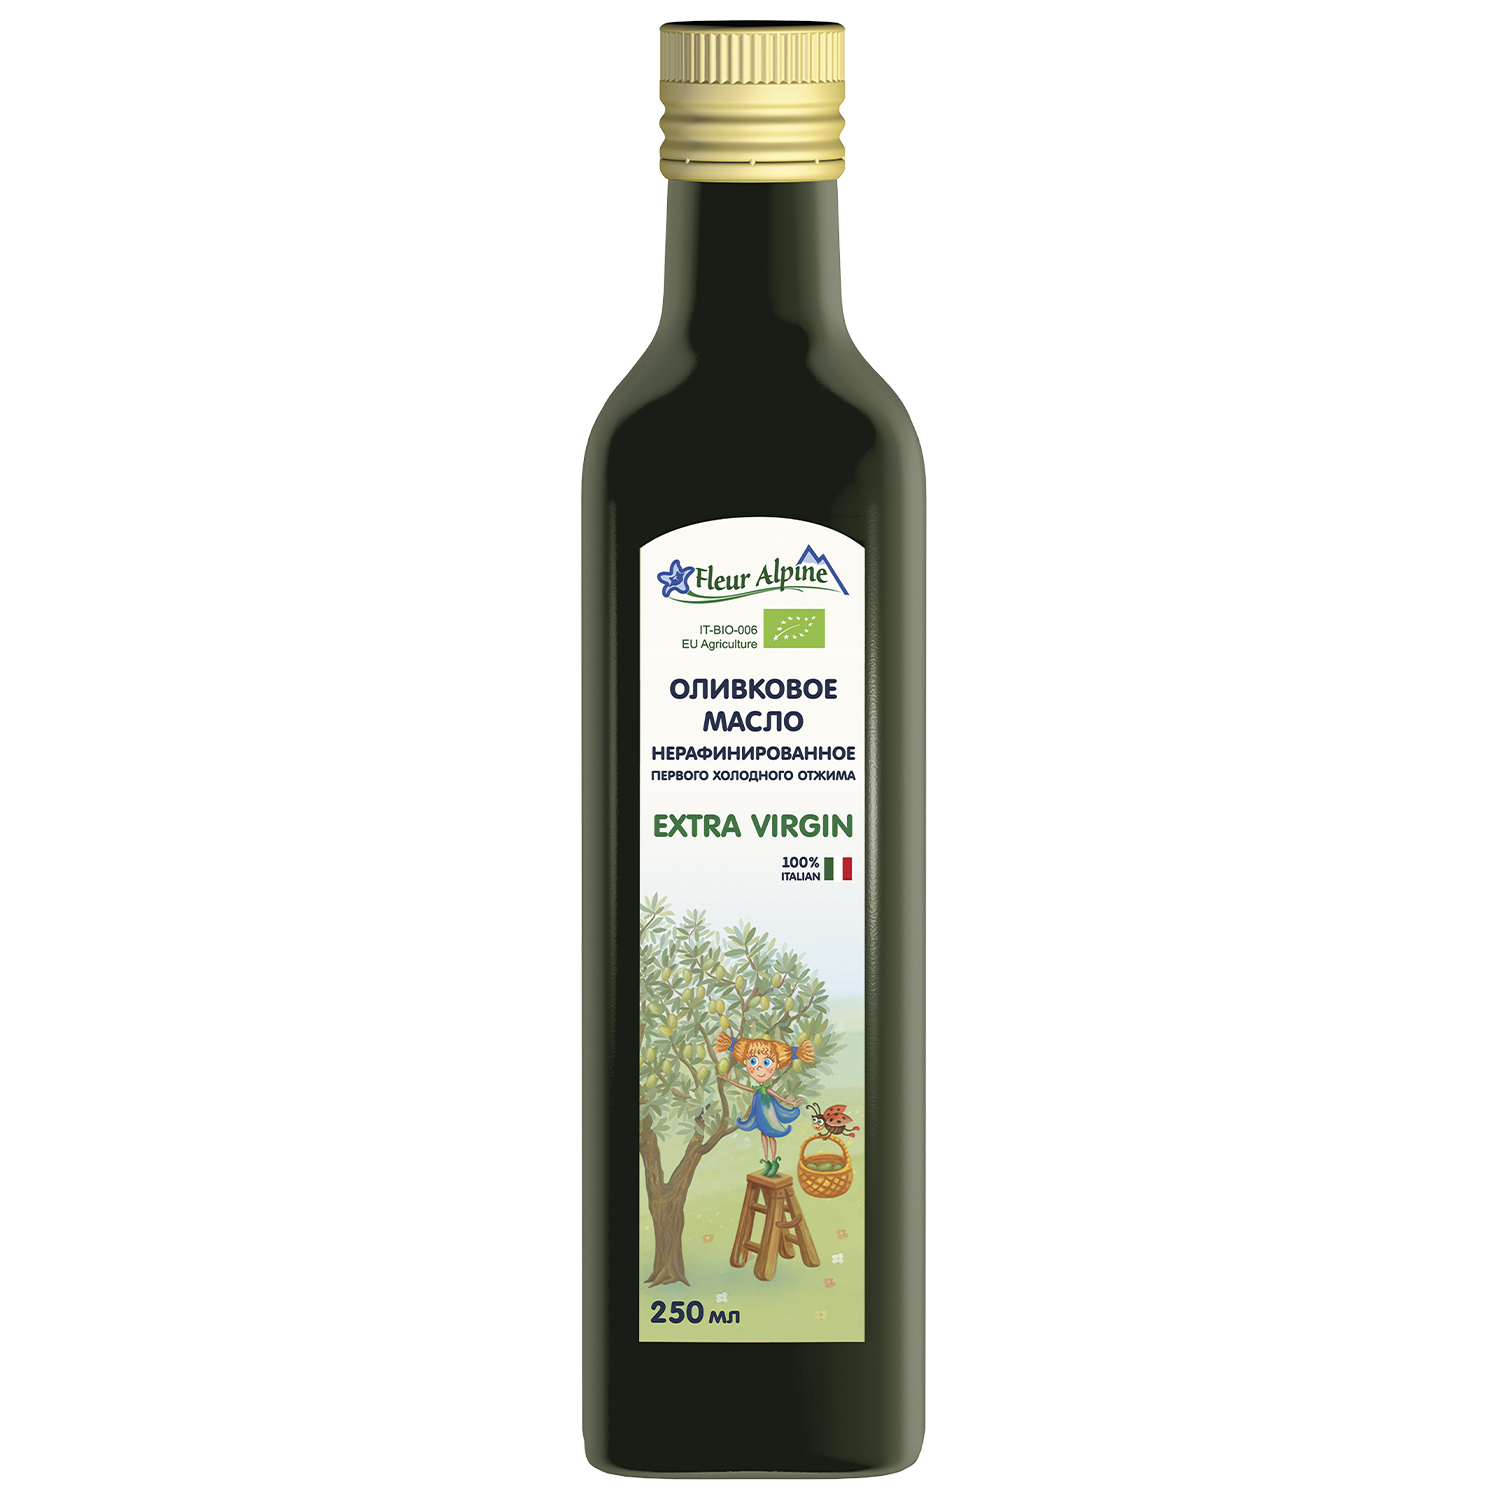 Оливковое масло детское Fleur Alpine Extra Virgin, с 6 месяцев, 250 мл каша детская fleur alpine альпийский вечер молочная с 6 месяцев 200 гр